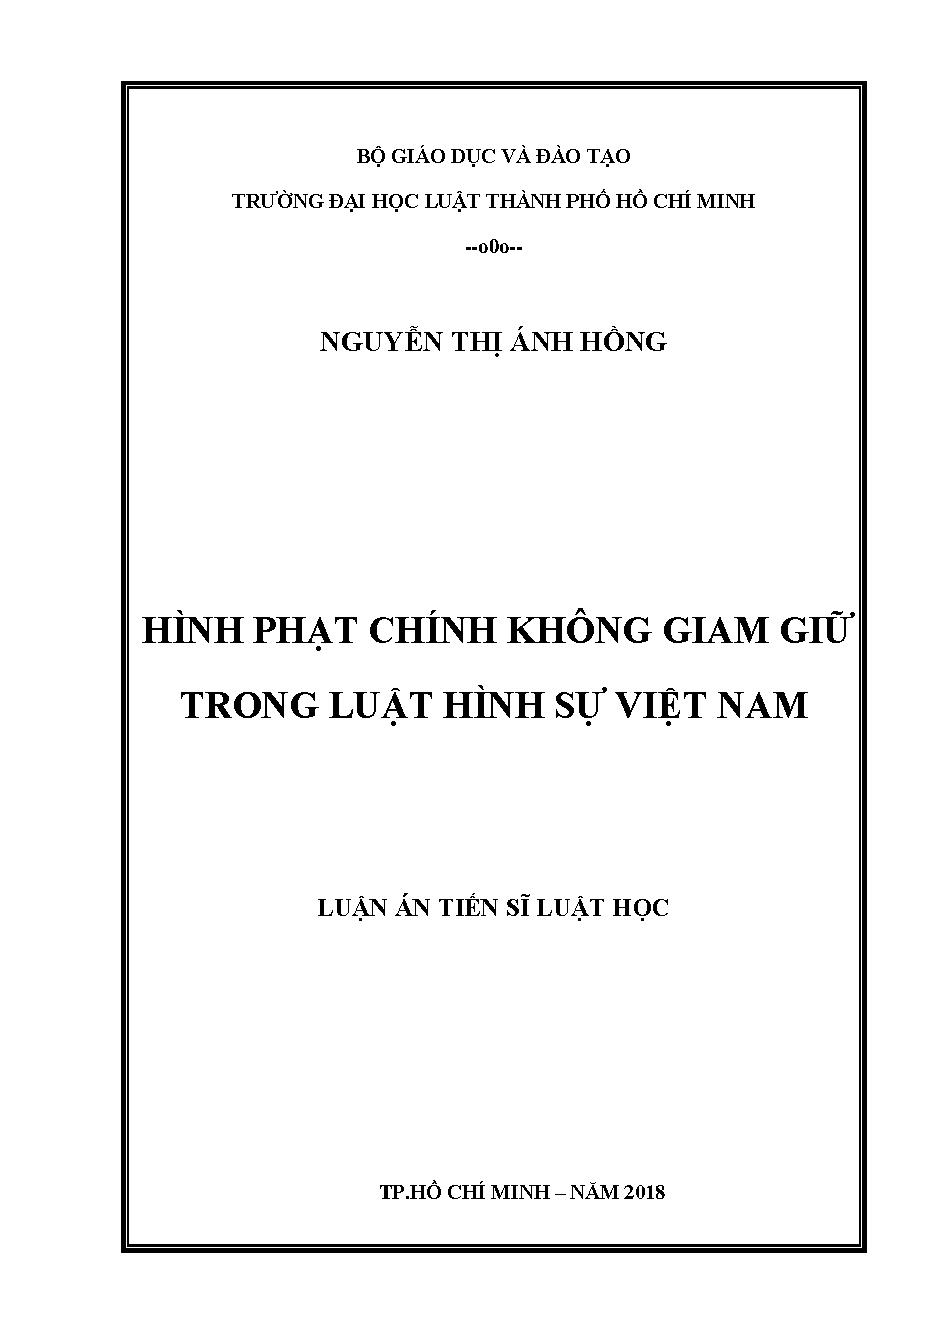 Hình phạt chính không giam giữ trong luật hình sự Việt Nam